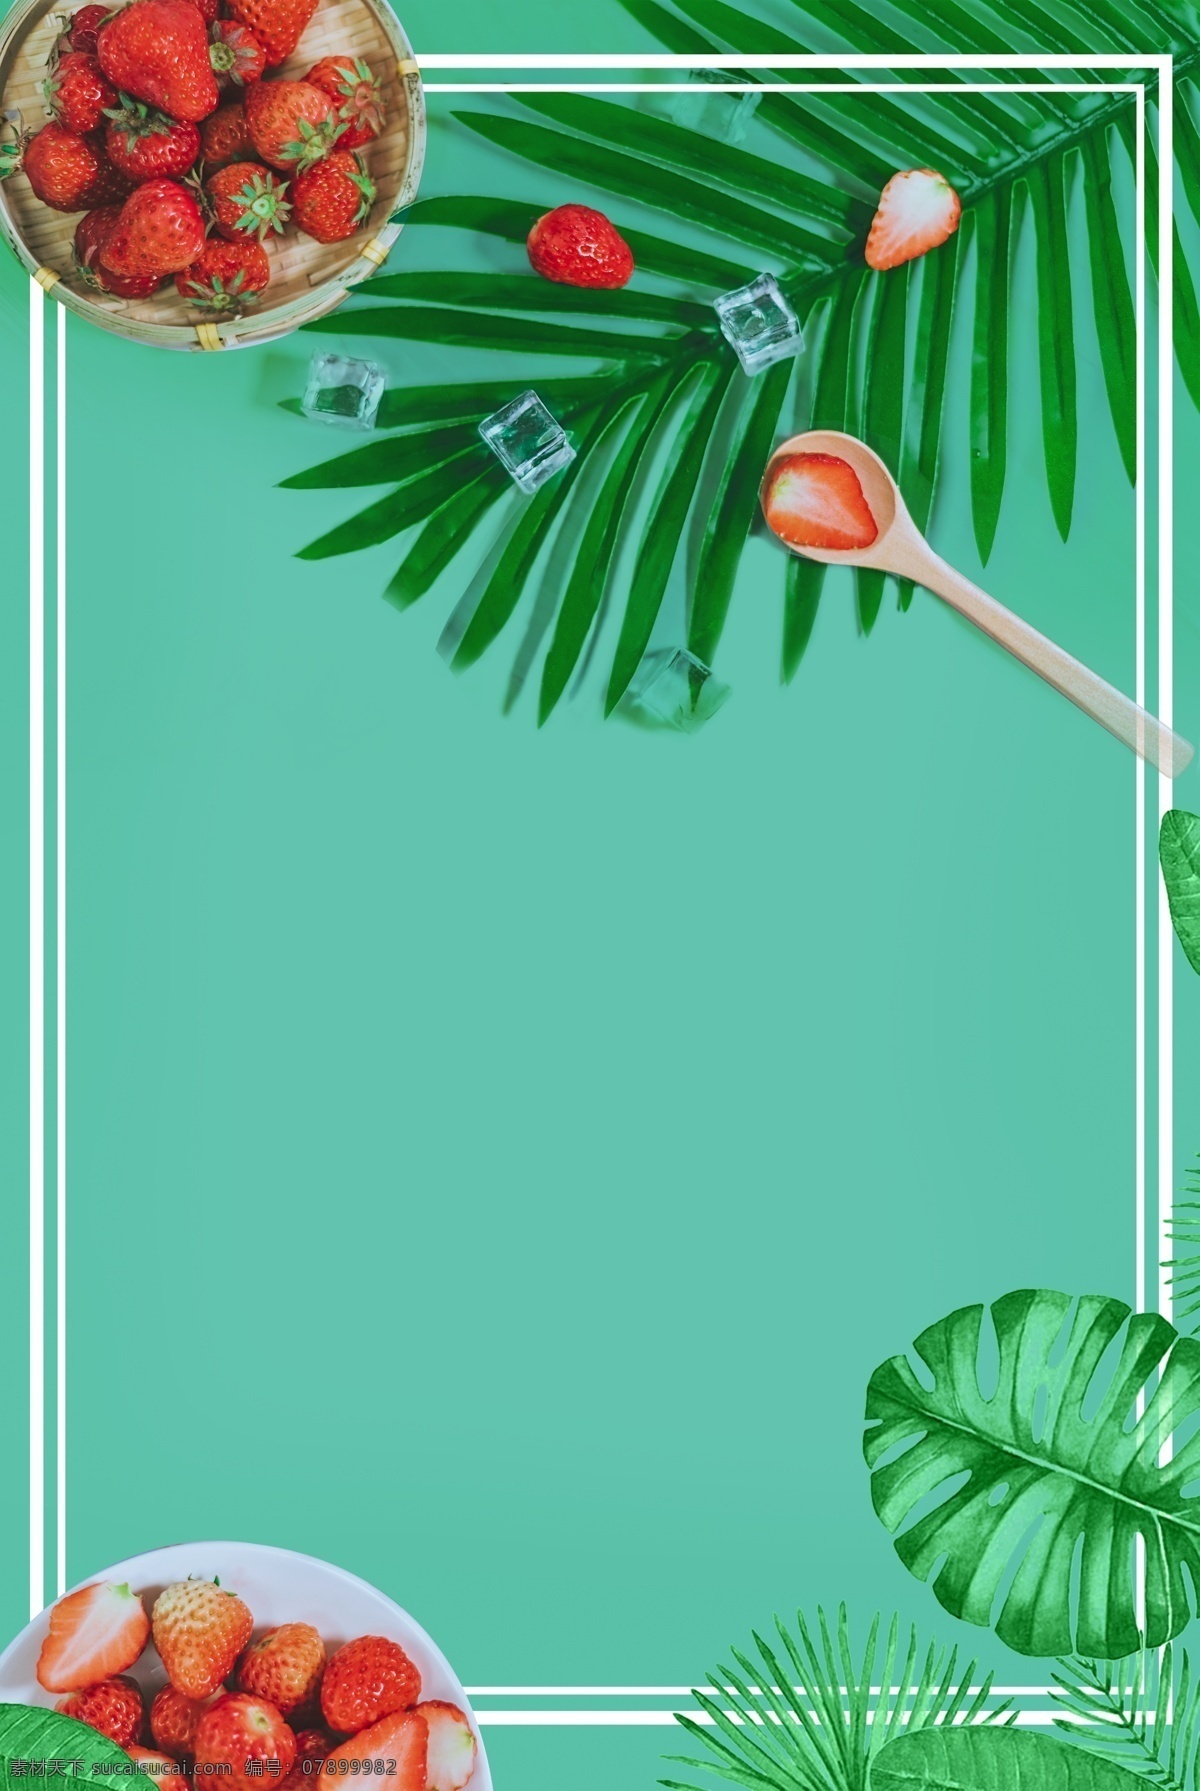 热带树叶背景 热带植物 树叶 绿色叶子 龟背竹 底纹边框 背景底纹 水彩 夏季 花边花纹 卡片 名片卡片 叶子 热带雨林 热带花卉 自然景观 自然风光